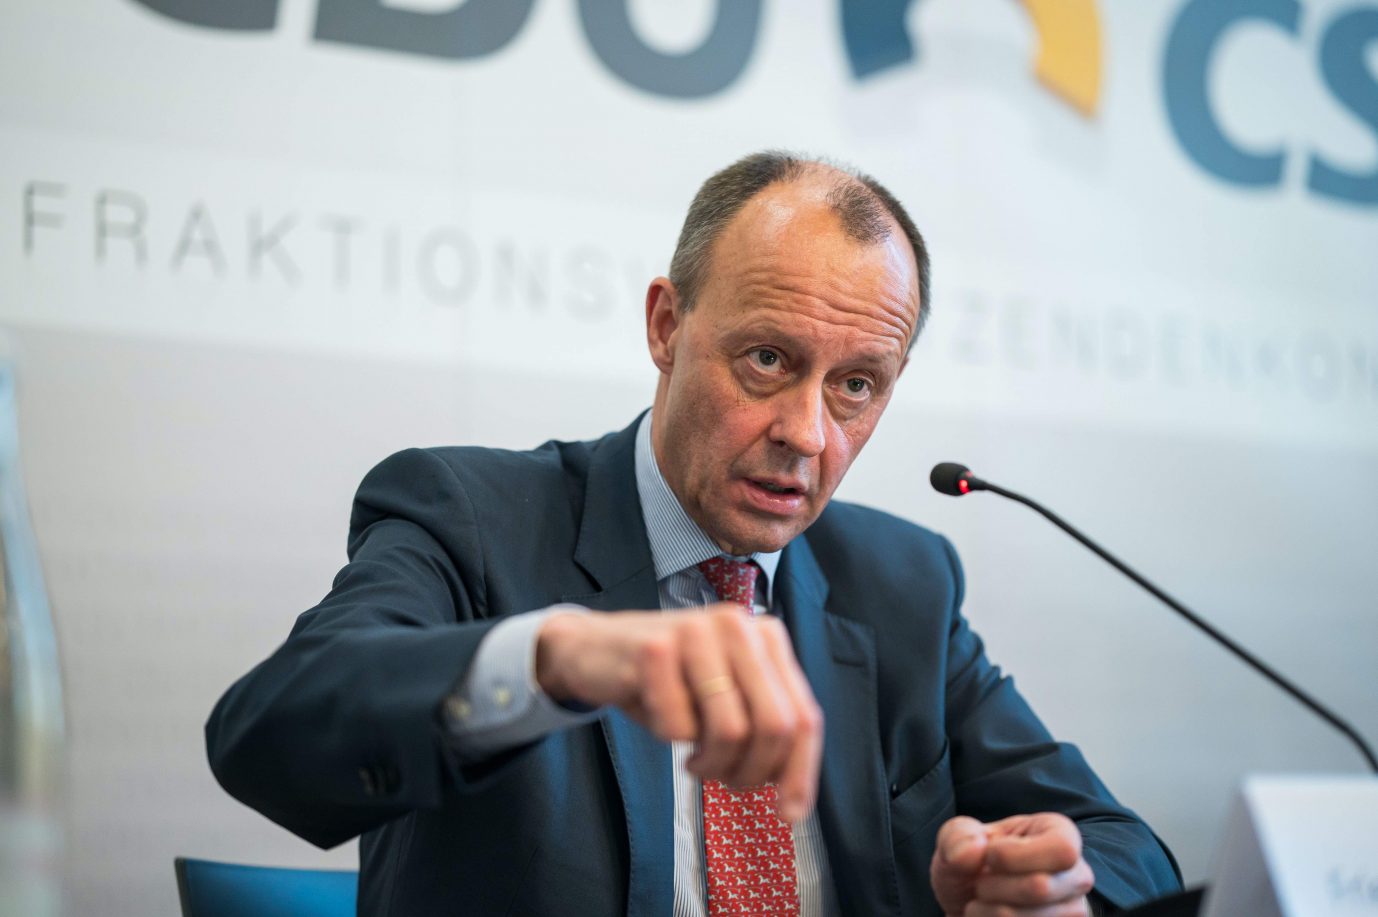 Der neue CDU-Parteichef Friedrich Merz wirbt in Saarbrückenfür Offenheit im Umgang mit der Kernenergie Foto: picture alliance/dpa | Oliver Dietze